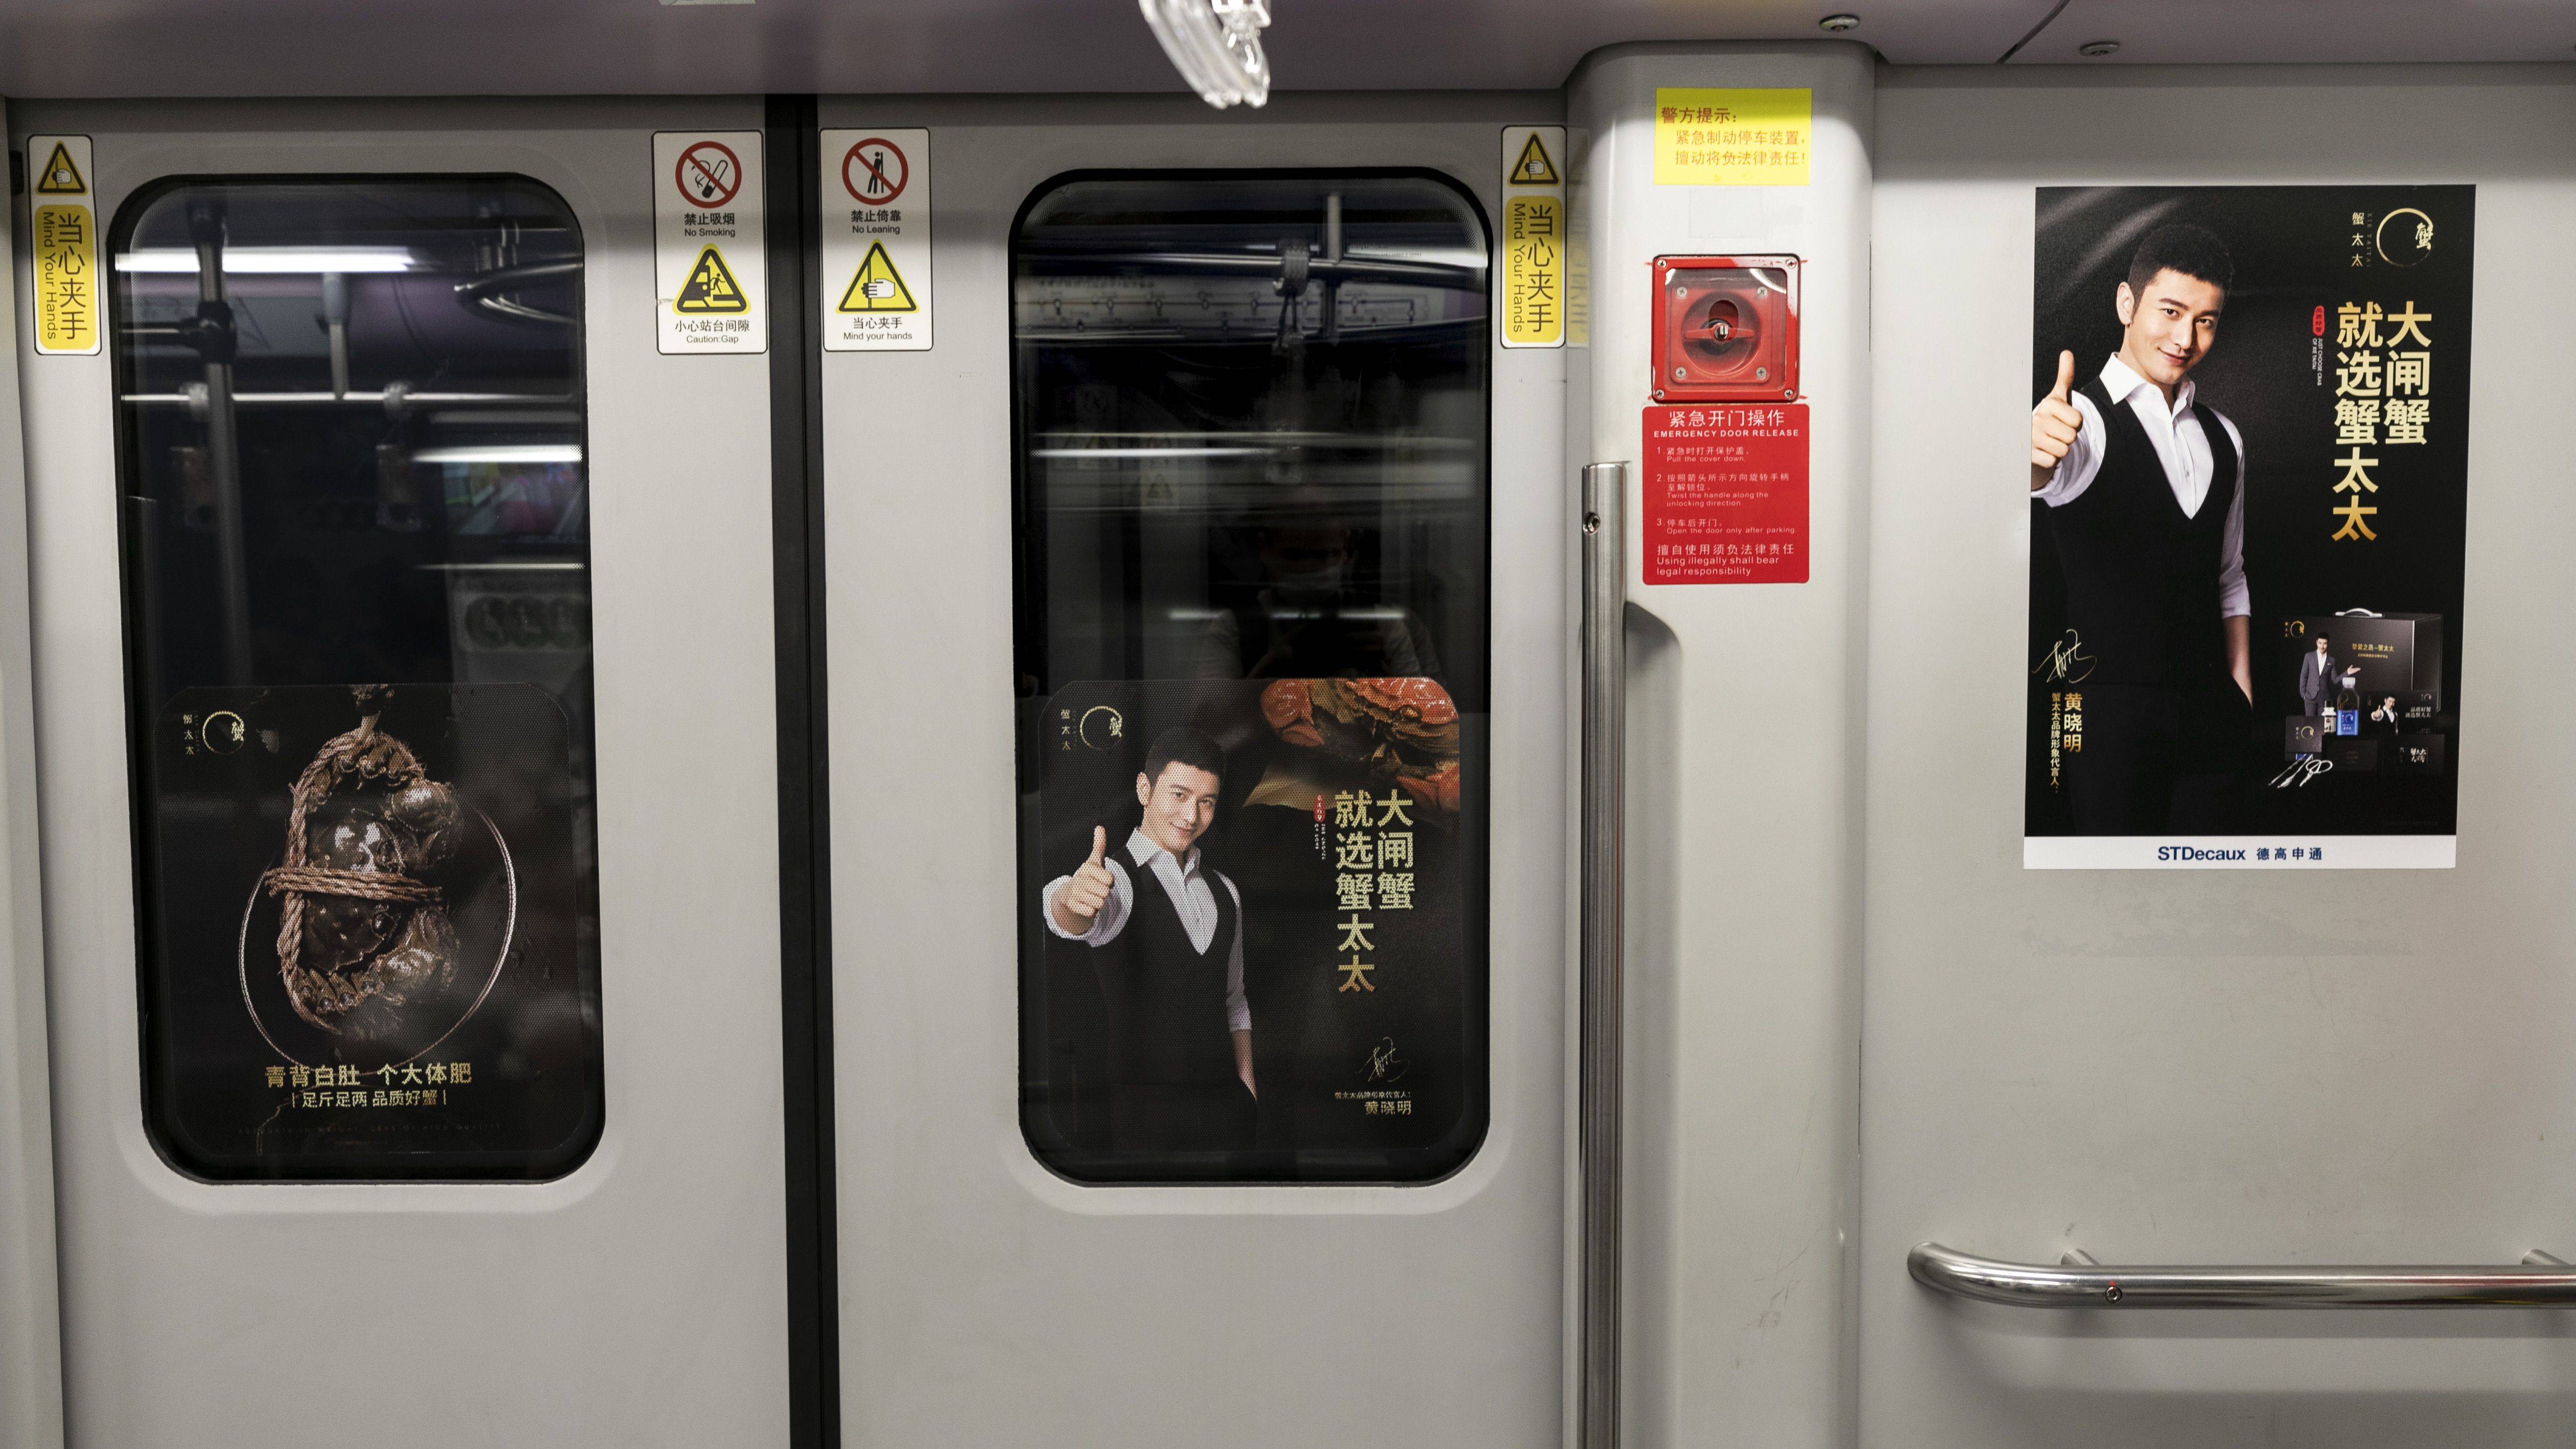 高性价比发布地铁内包车广告可读性强的广告